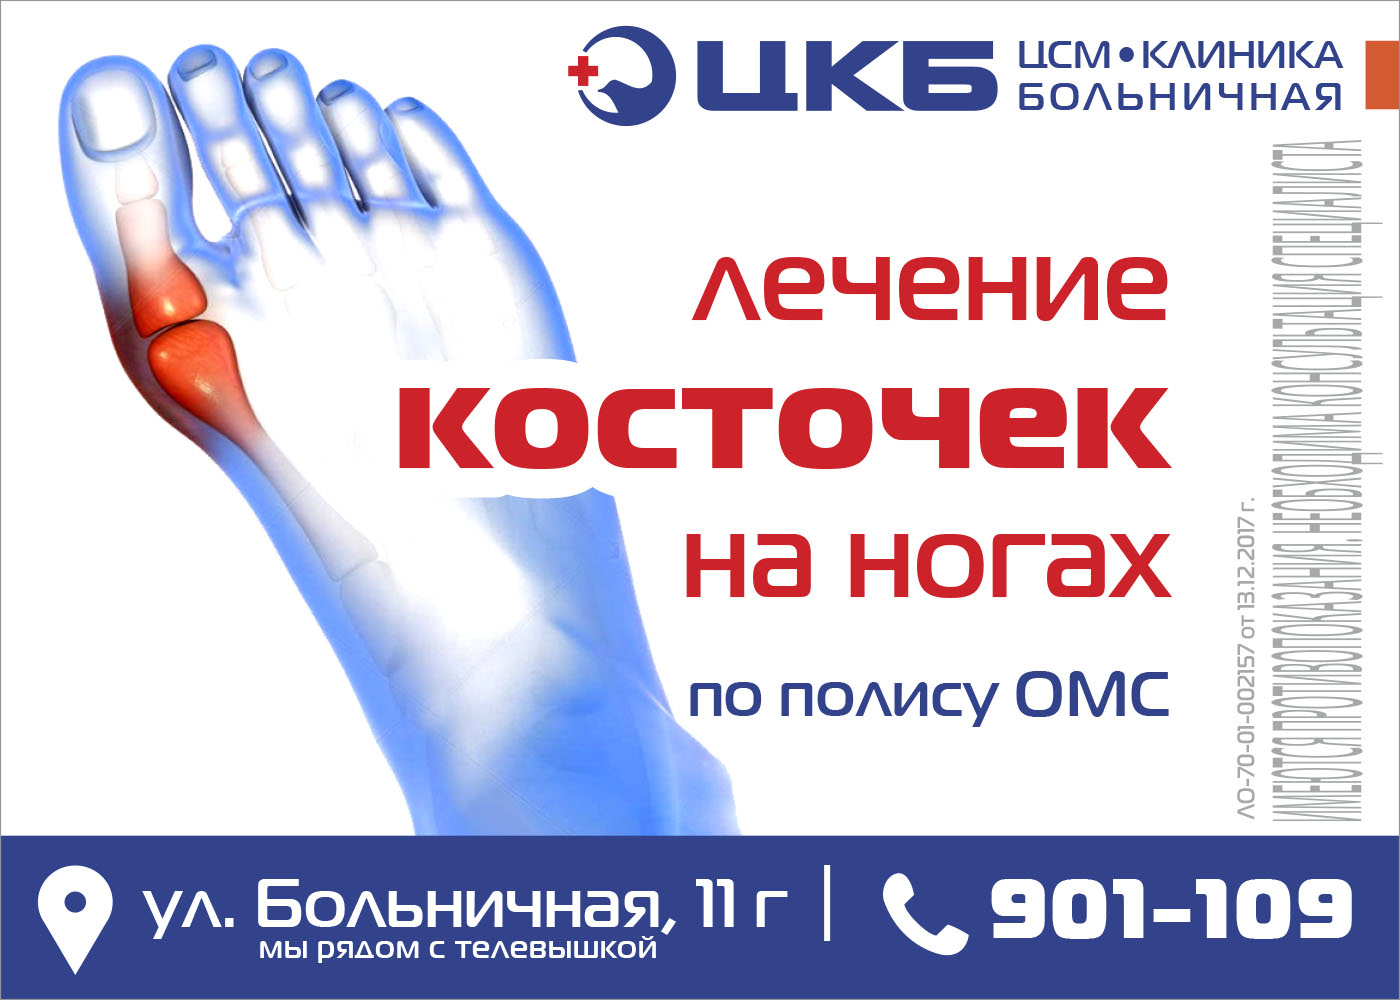 Операция лазером по омс. Операция косточек на ногах по ОМС. Удалить косточку на ноге в Москве по полису ОМС. Удаление косточки на ноге по полису ОМС. Удаление косточек на ногах в Москве по полису ОМС.